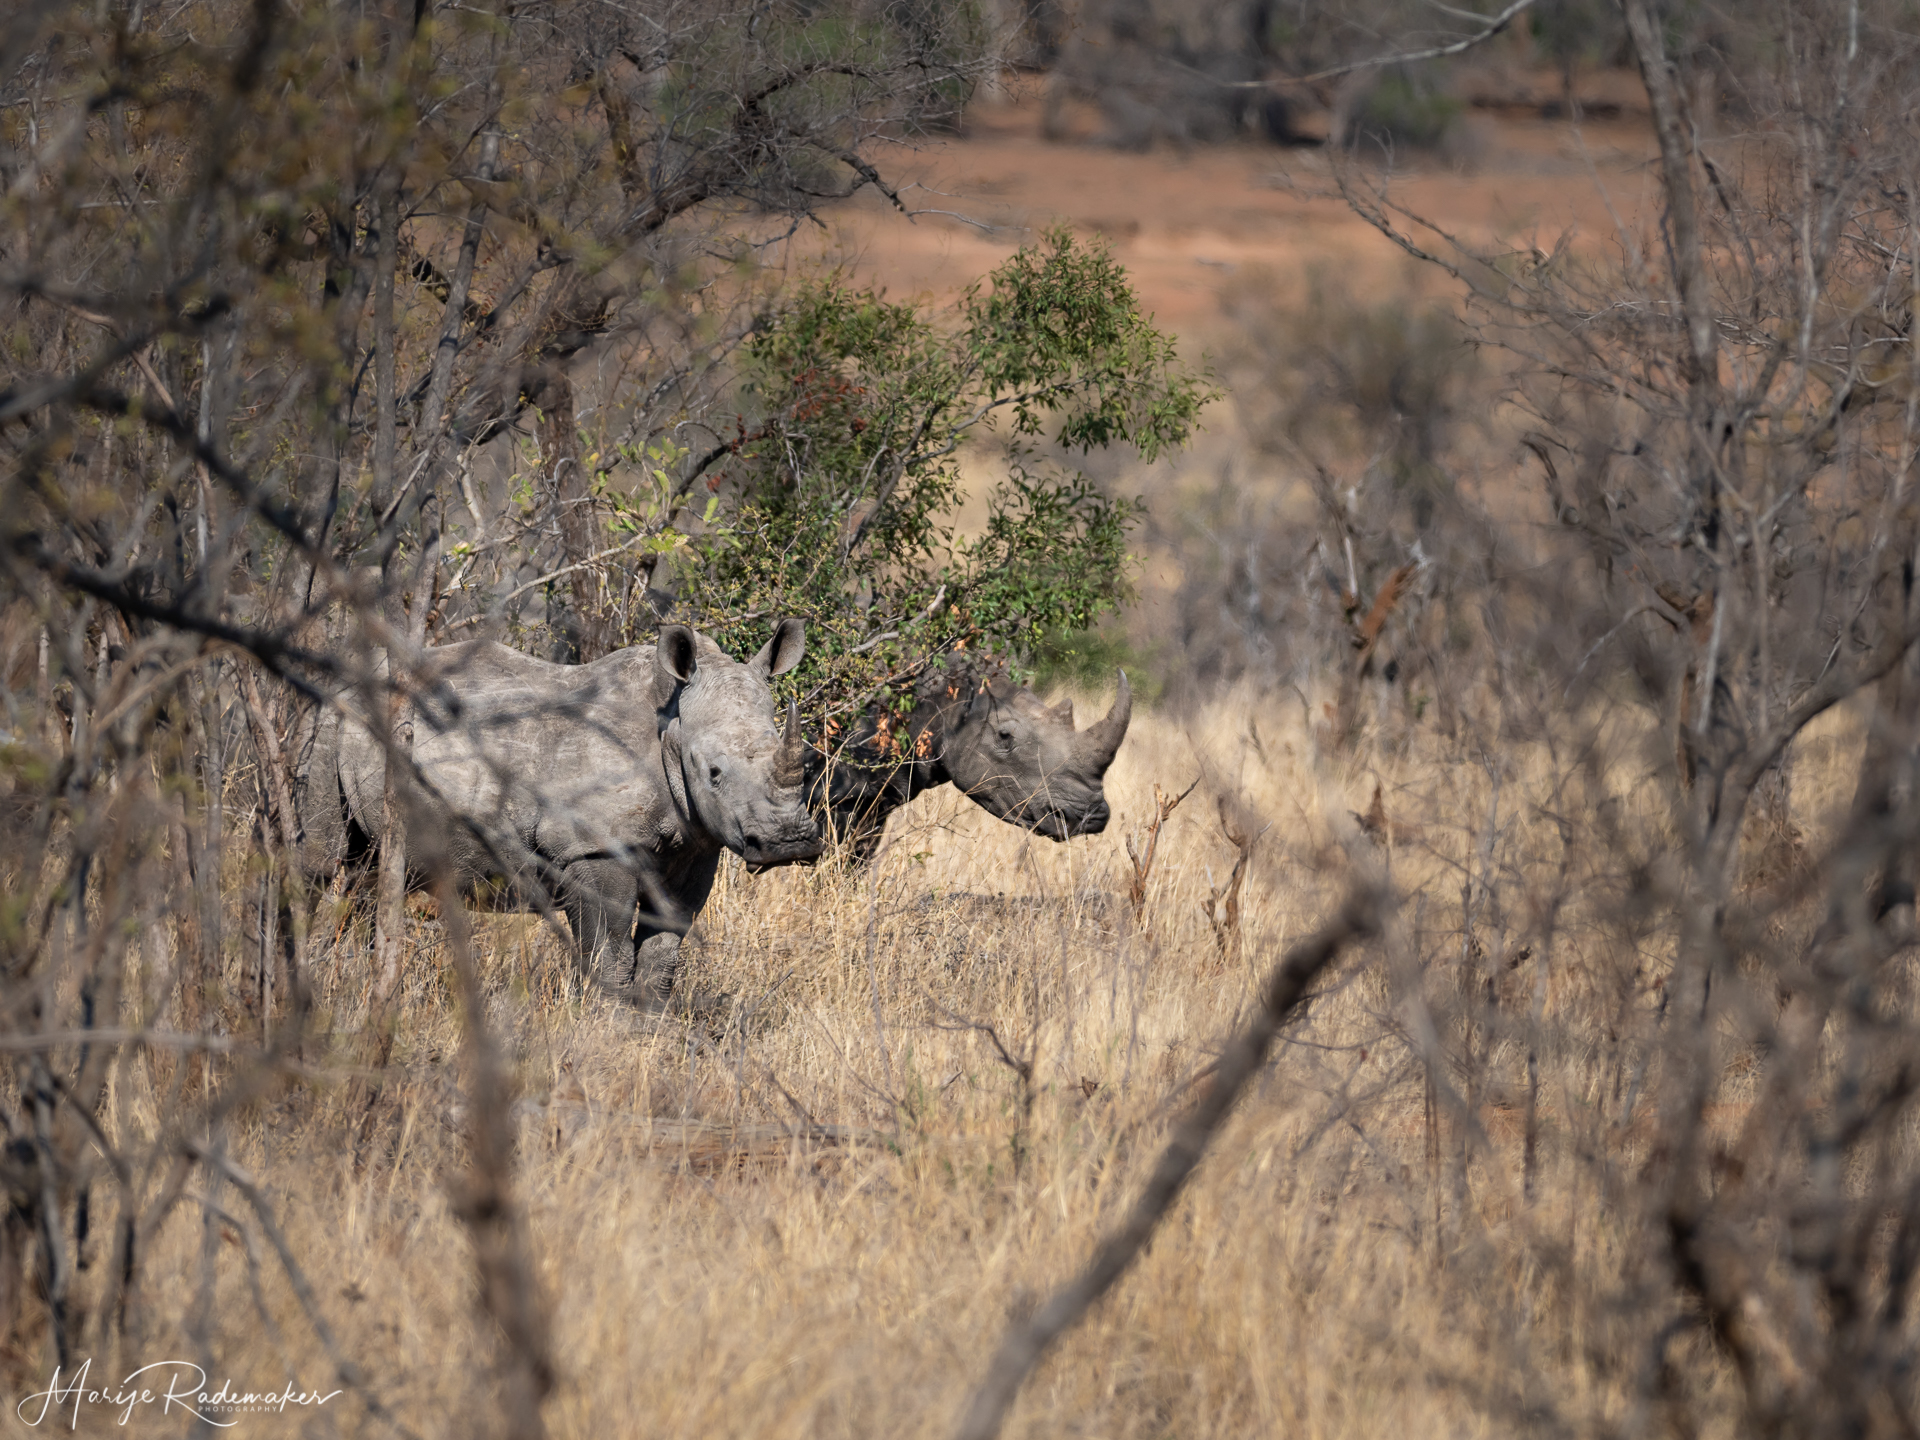 Captured at Kruger NP on 06 Oct, 2019 by Marije Rademaker